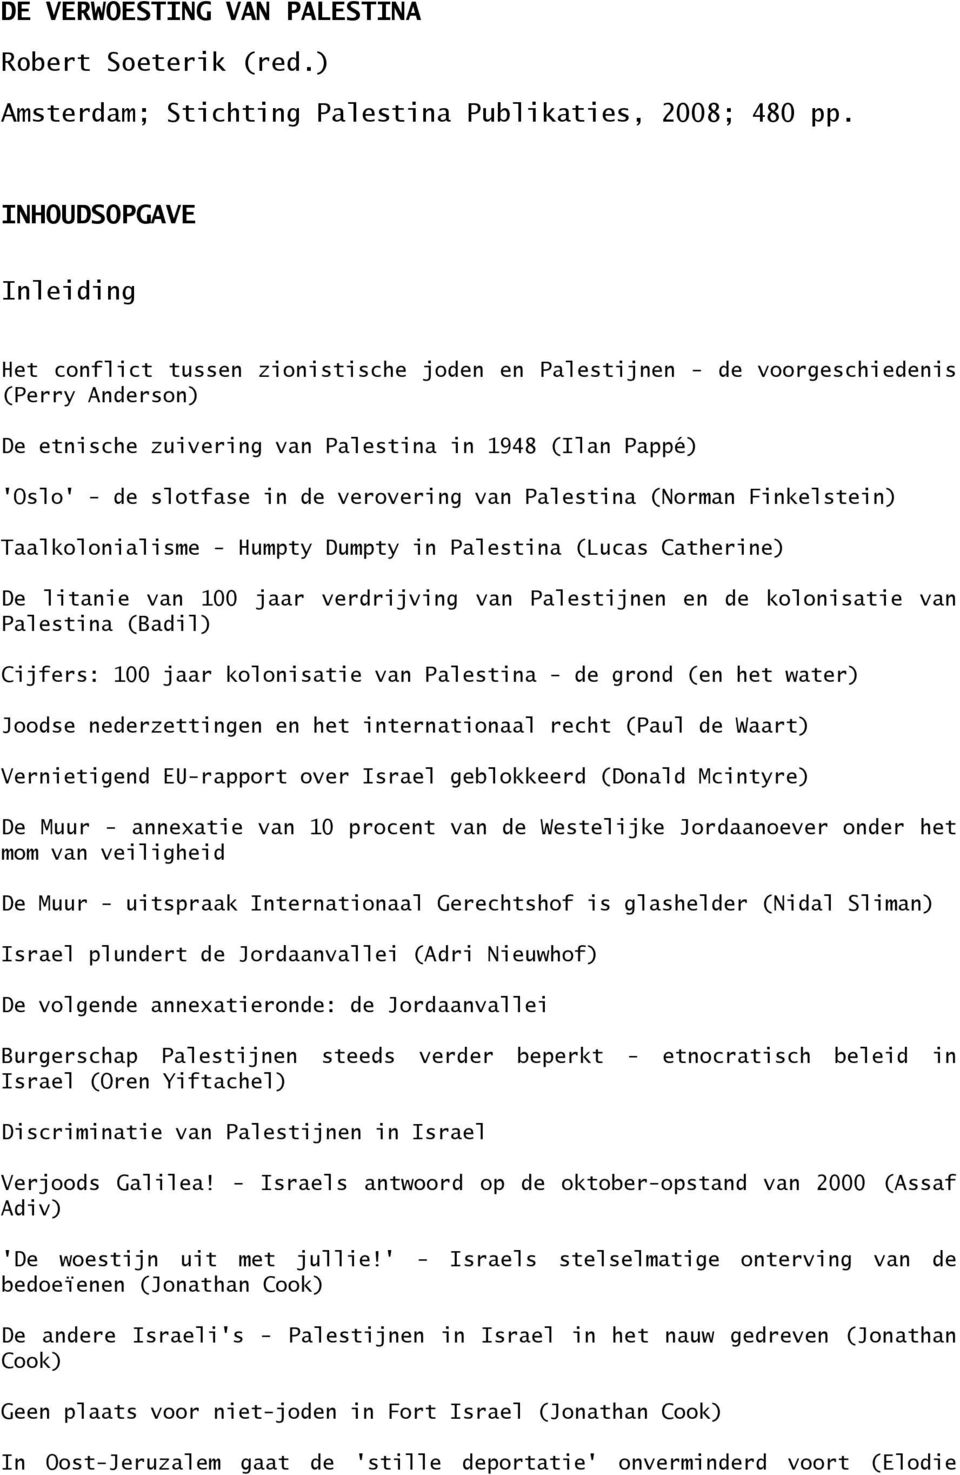 de verovering van Palestina (Norman Finkelstein) Taalkolonialisme - Humpty Dumpty in Palestina (Lucas Catherine) De litanie van 100 jaar verdrijving van Palestijnen en de kolonisatie van Palestina